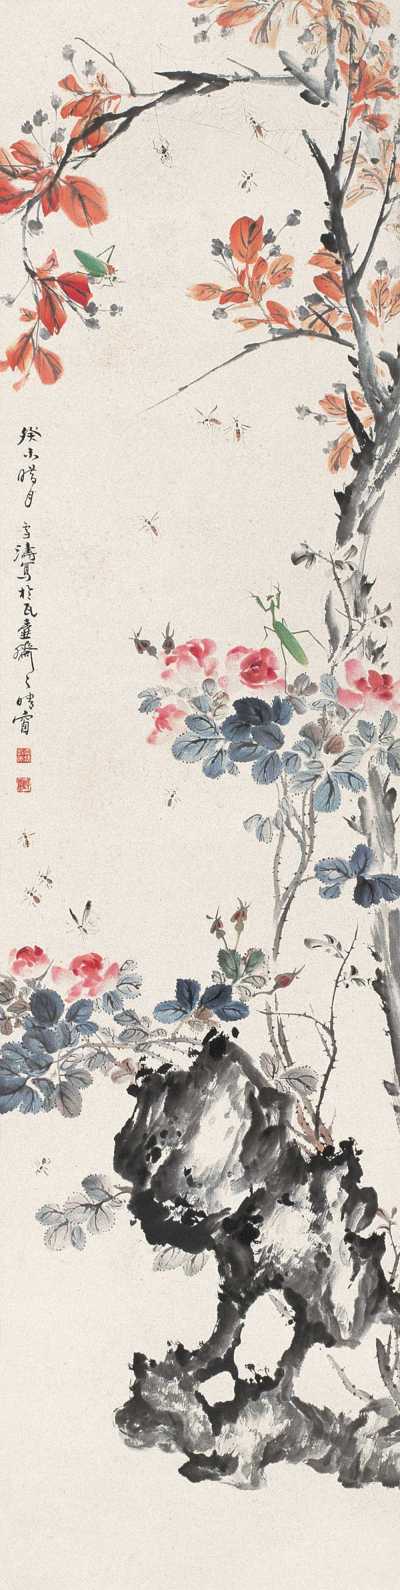 王雪涛 1943年作 花卉草虫 立轴